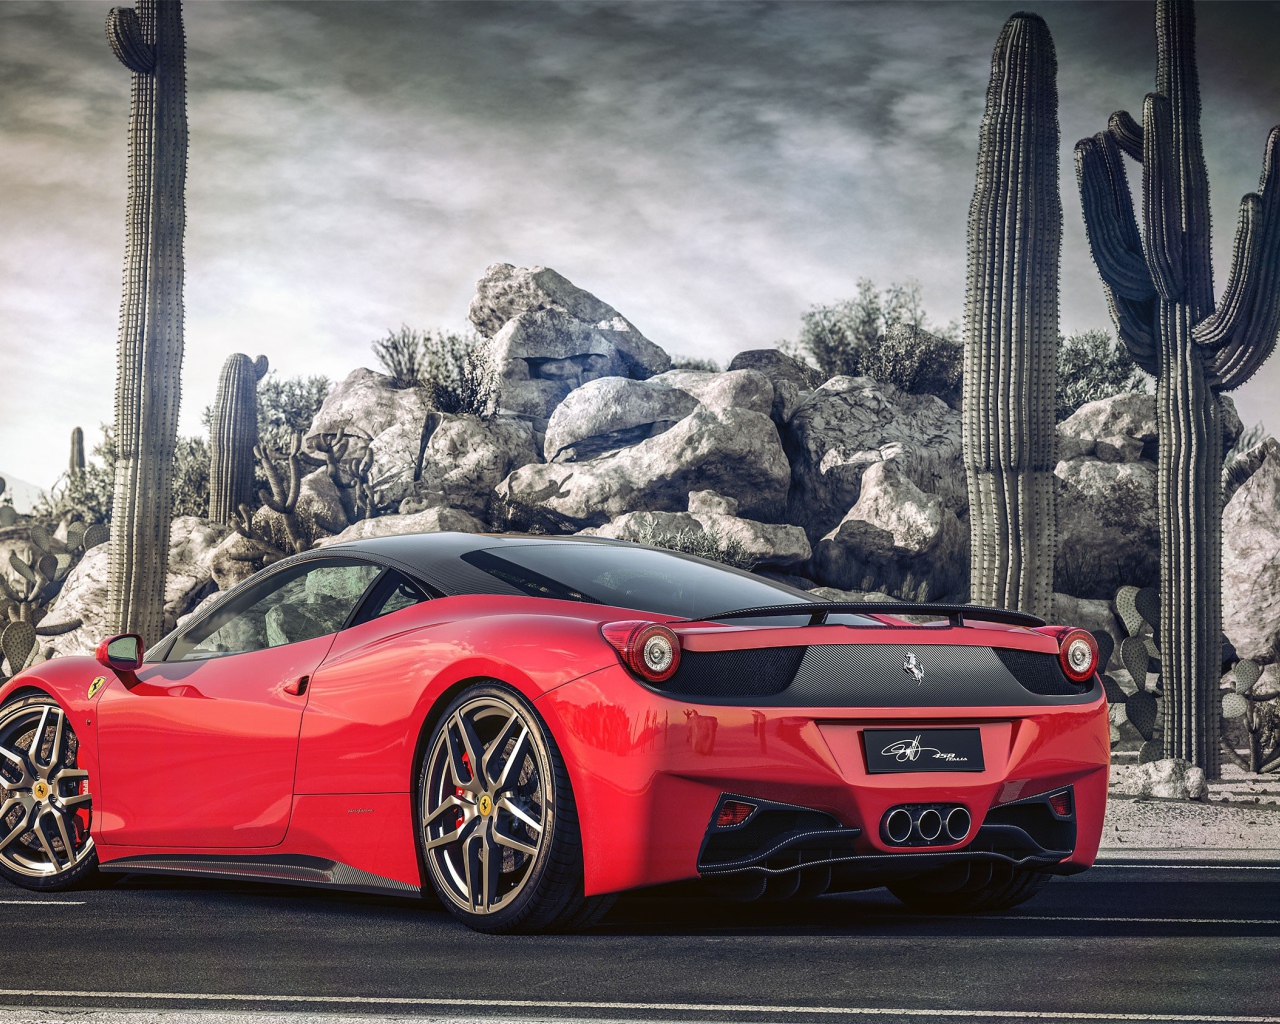 Красный Ferrari у горы из камней